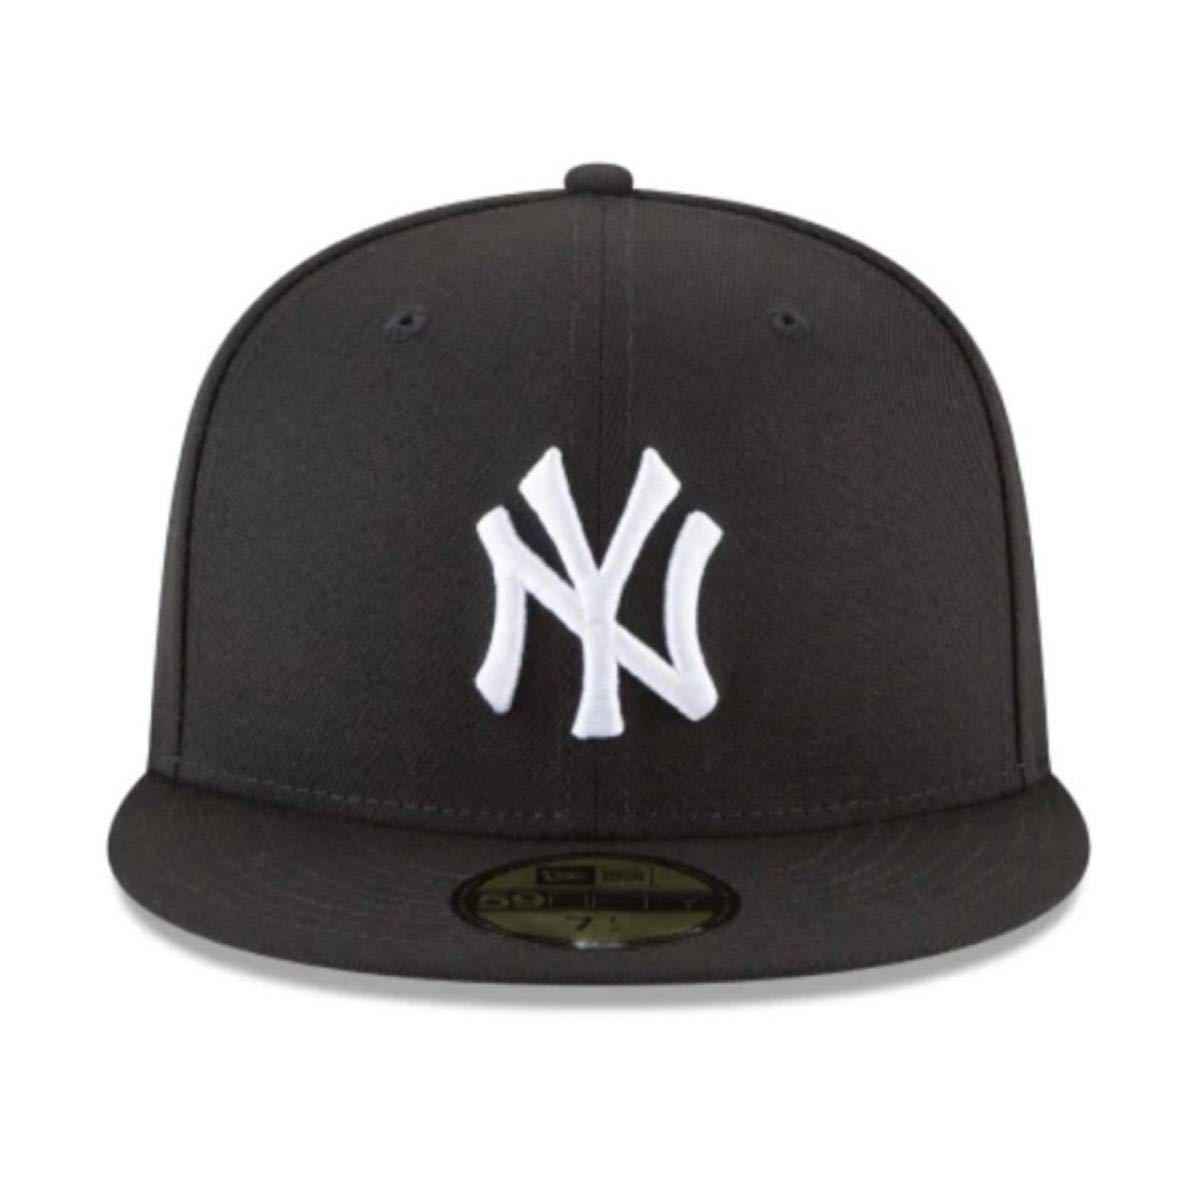 ☆正規品新品☆NEWERA 59FIFTY ニューエラ キャップ 帽子 野球帽 5950シリーズ ヤンキース ブラック×ホワイト 60.6cm ユニセックス_画像2